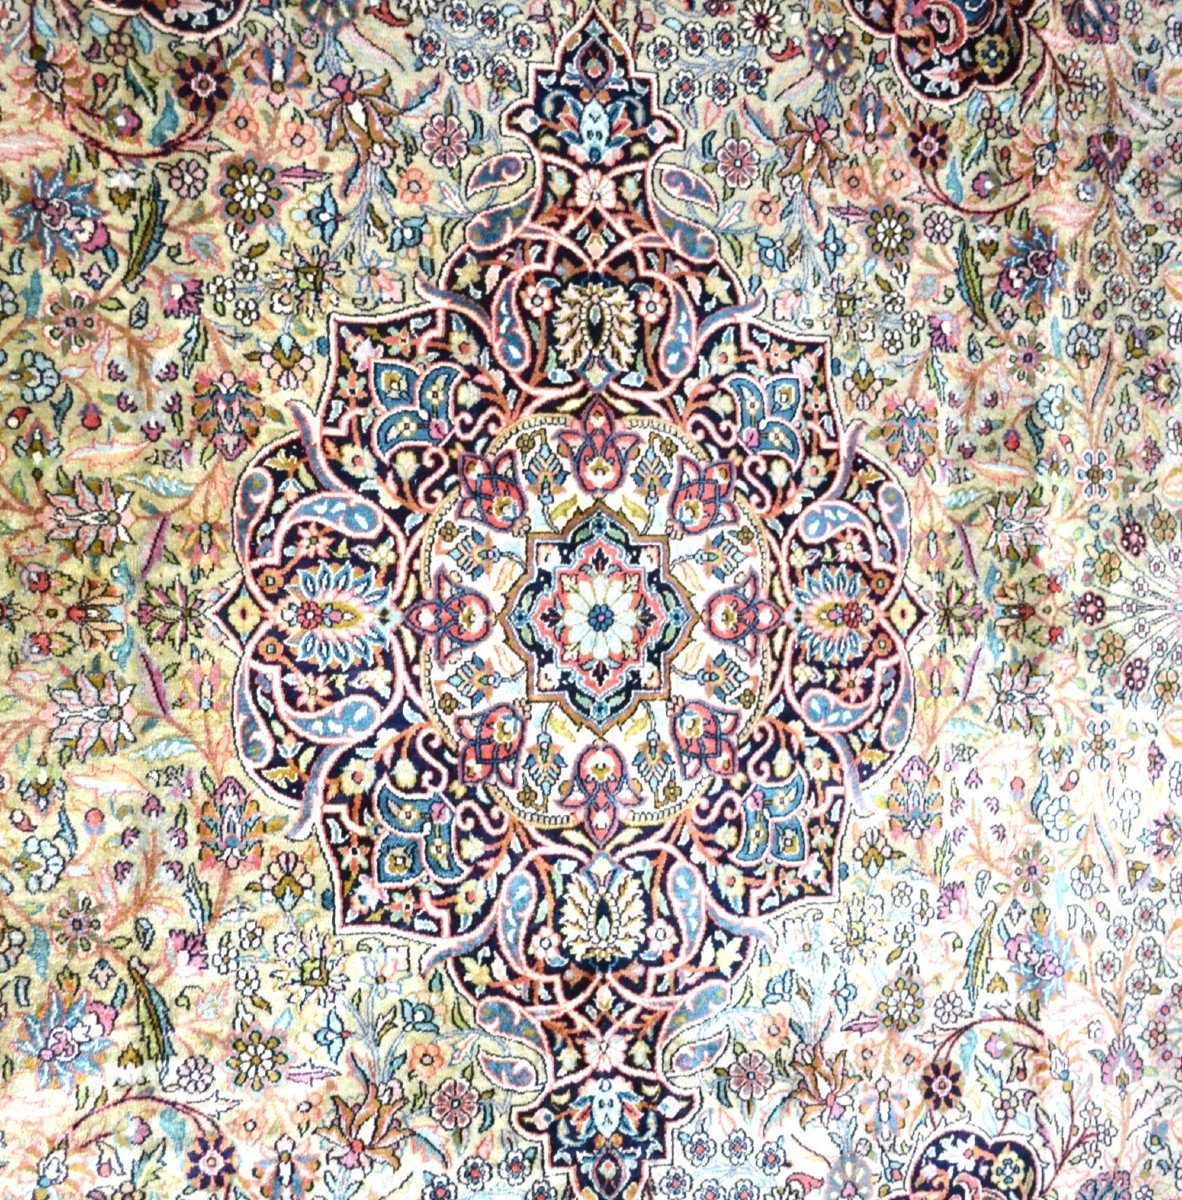 Tapis soie du Cachemire, 236 cm x 330 cm, soie nouée main vers 1970, Cachemire, nord de l'Inde